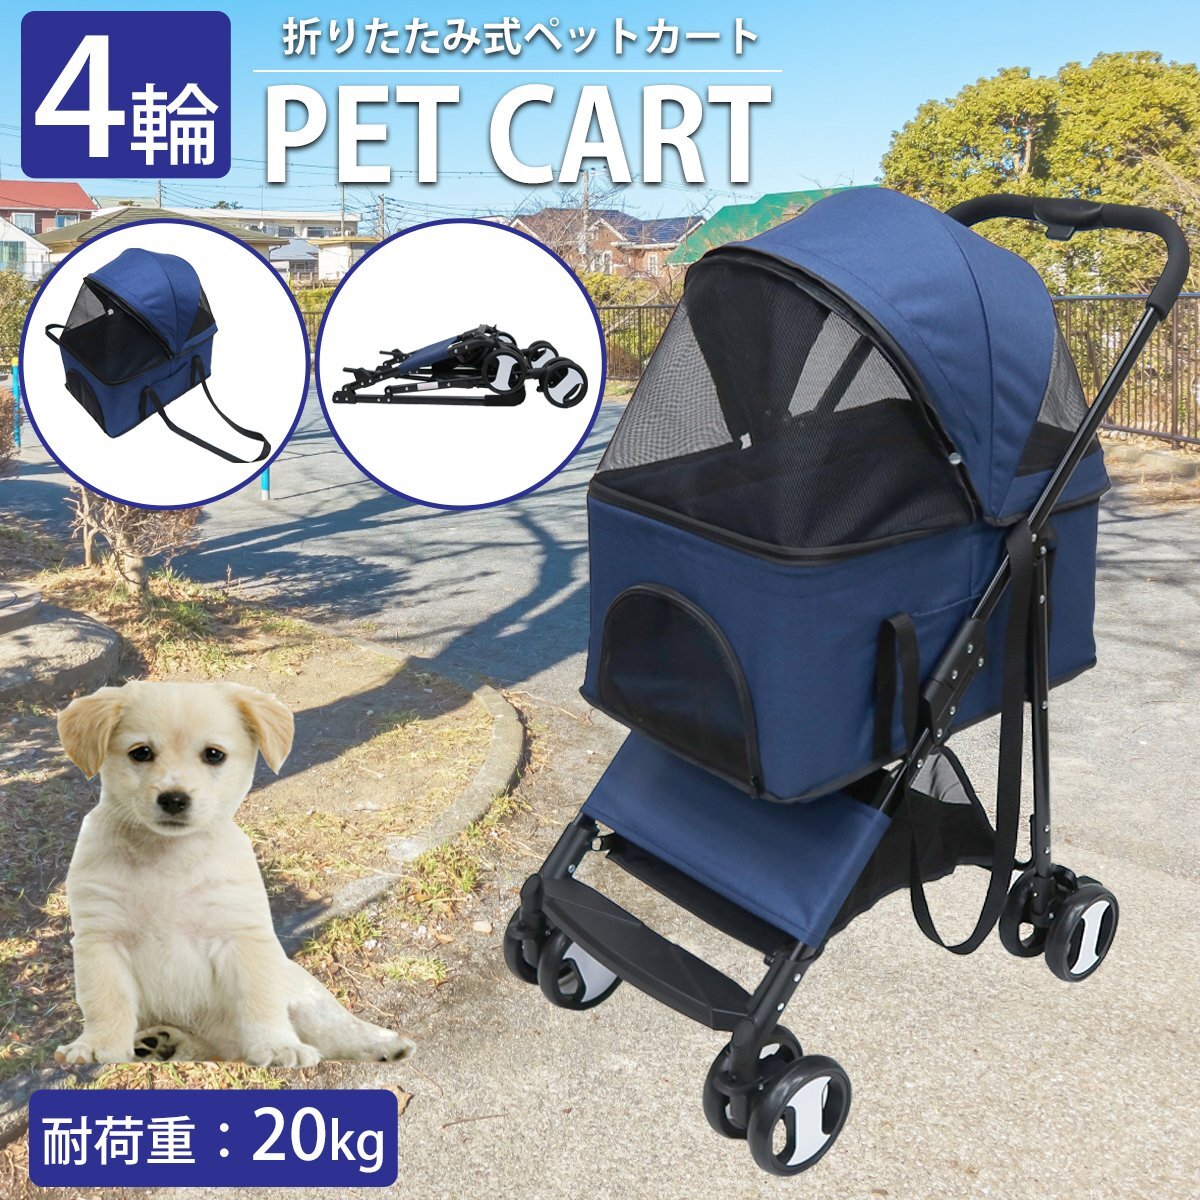 ペットバギー コンパクト 小型犬 中型犬 ペットカート クッション 4輪 折りたたみ 犬 猫 ペット用品 お出かけ お散歩 旅行 通院 PB-02NVの画像1